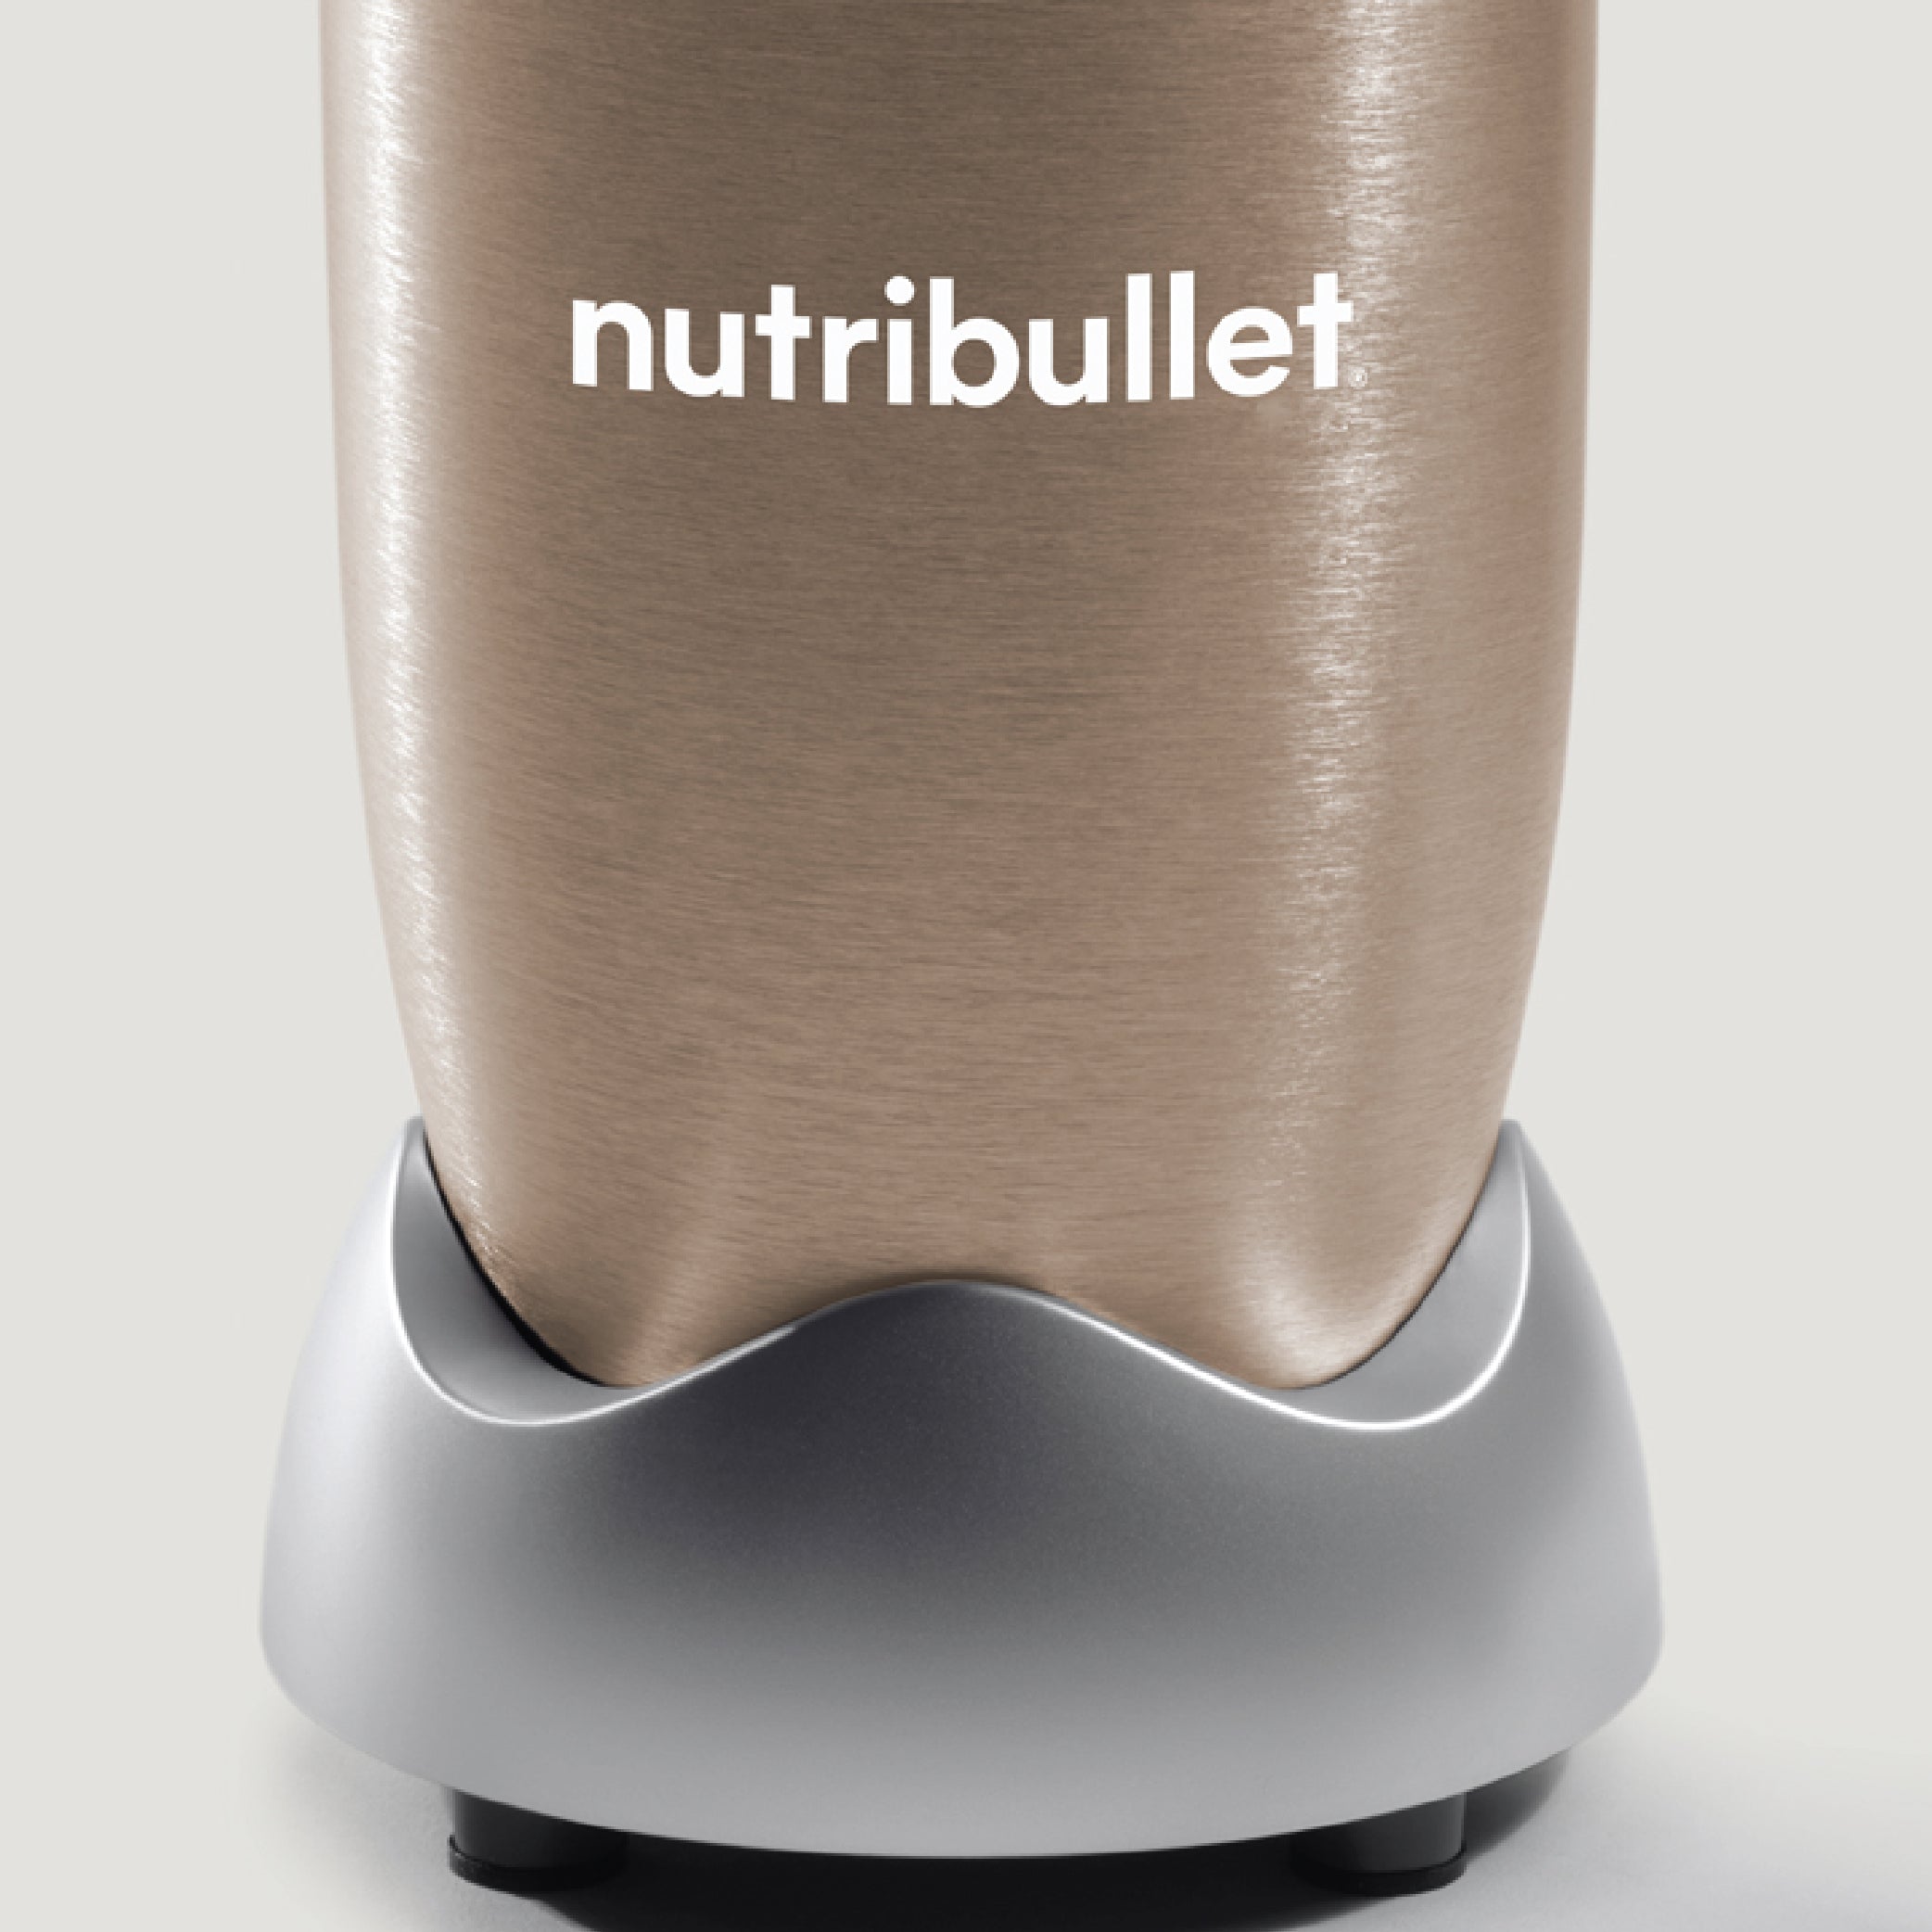 NutriBullet 600W Personal Blender - Matte Mint Green, NutriBullet